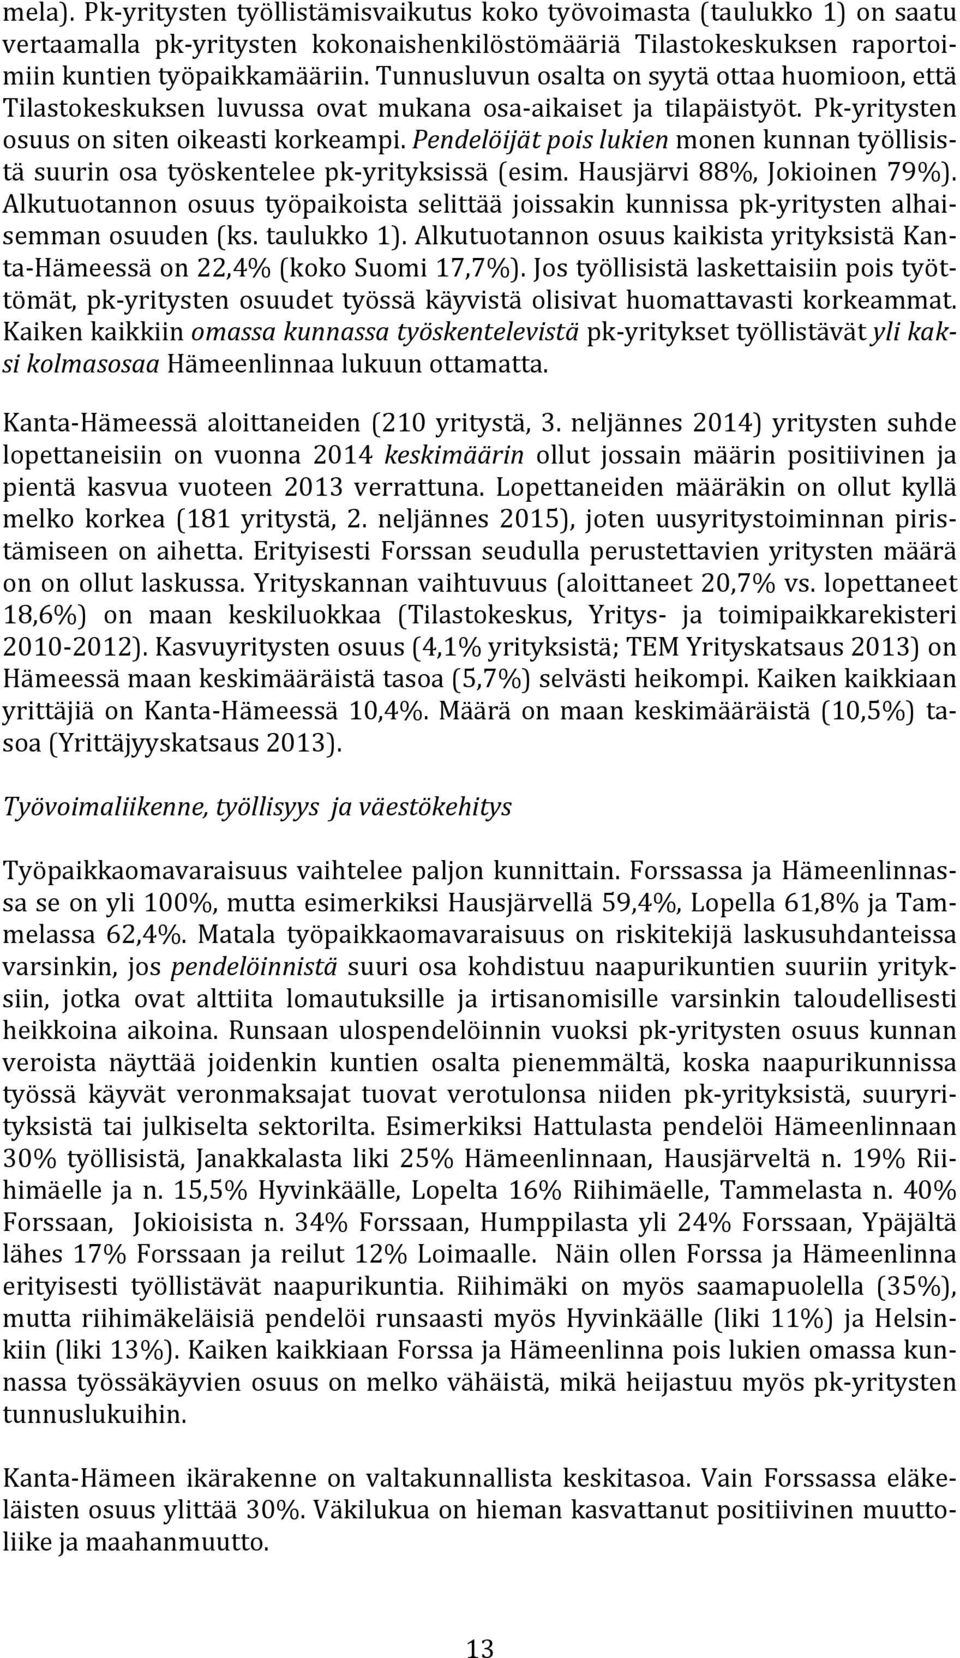 Pendelöijät pois lukien monen kunnan työllisis- tä suurin osa työskentelee pk- yrityksissä (esim. Hausjärvi 88%, Jokioinen 79%).